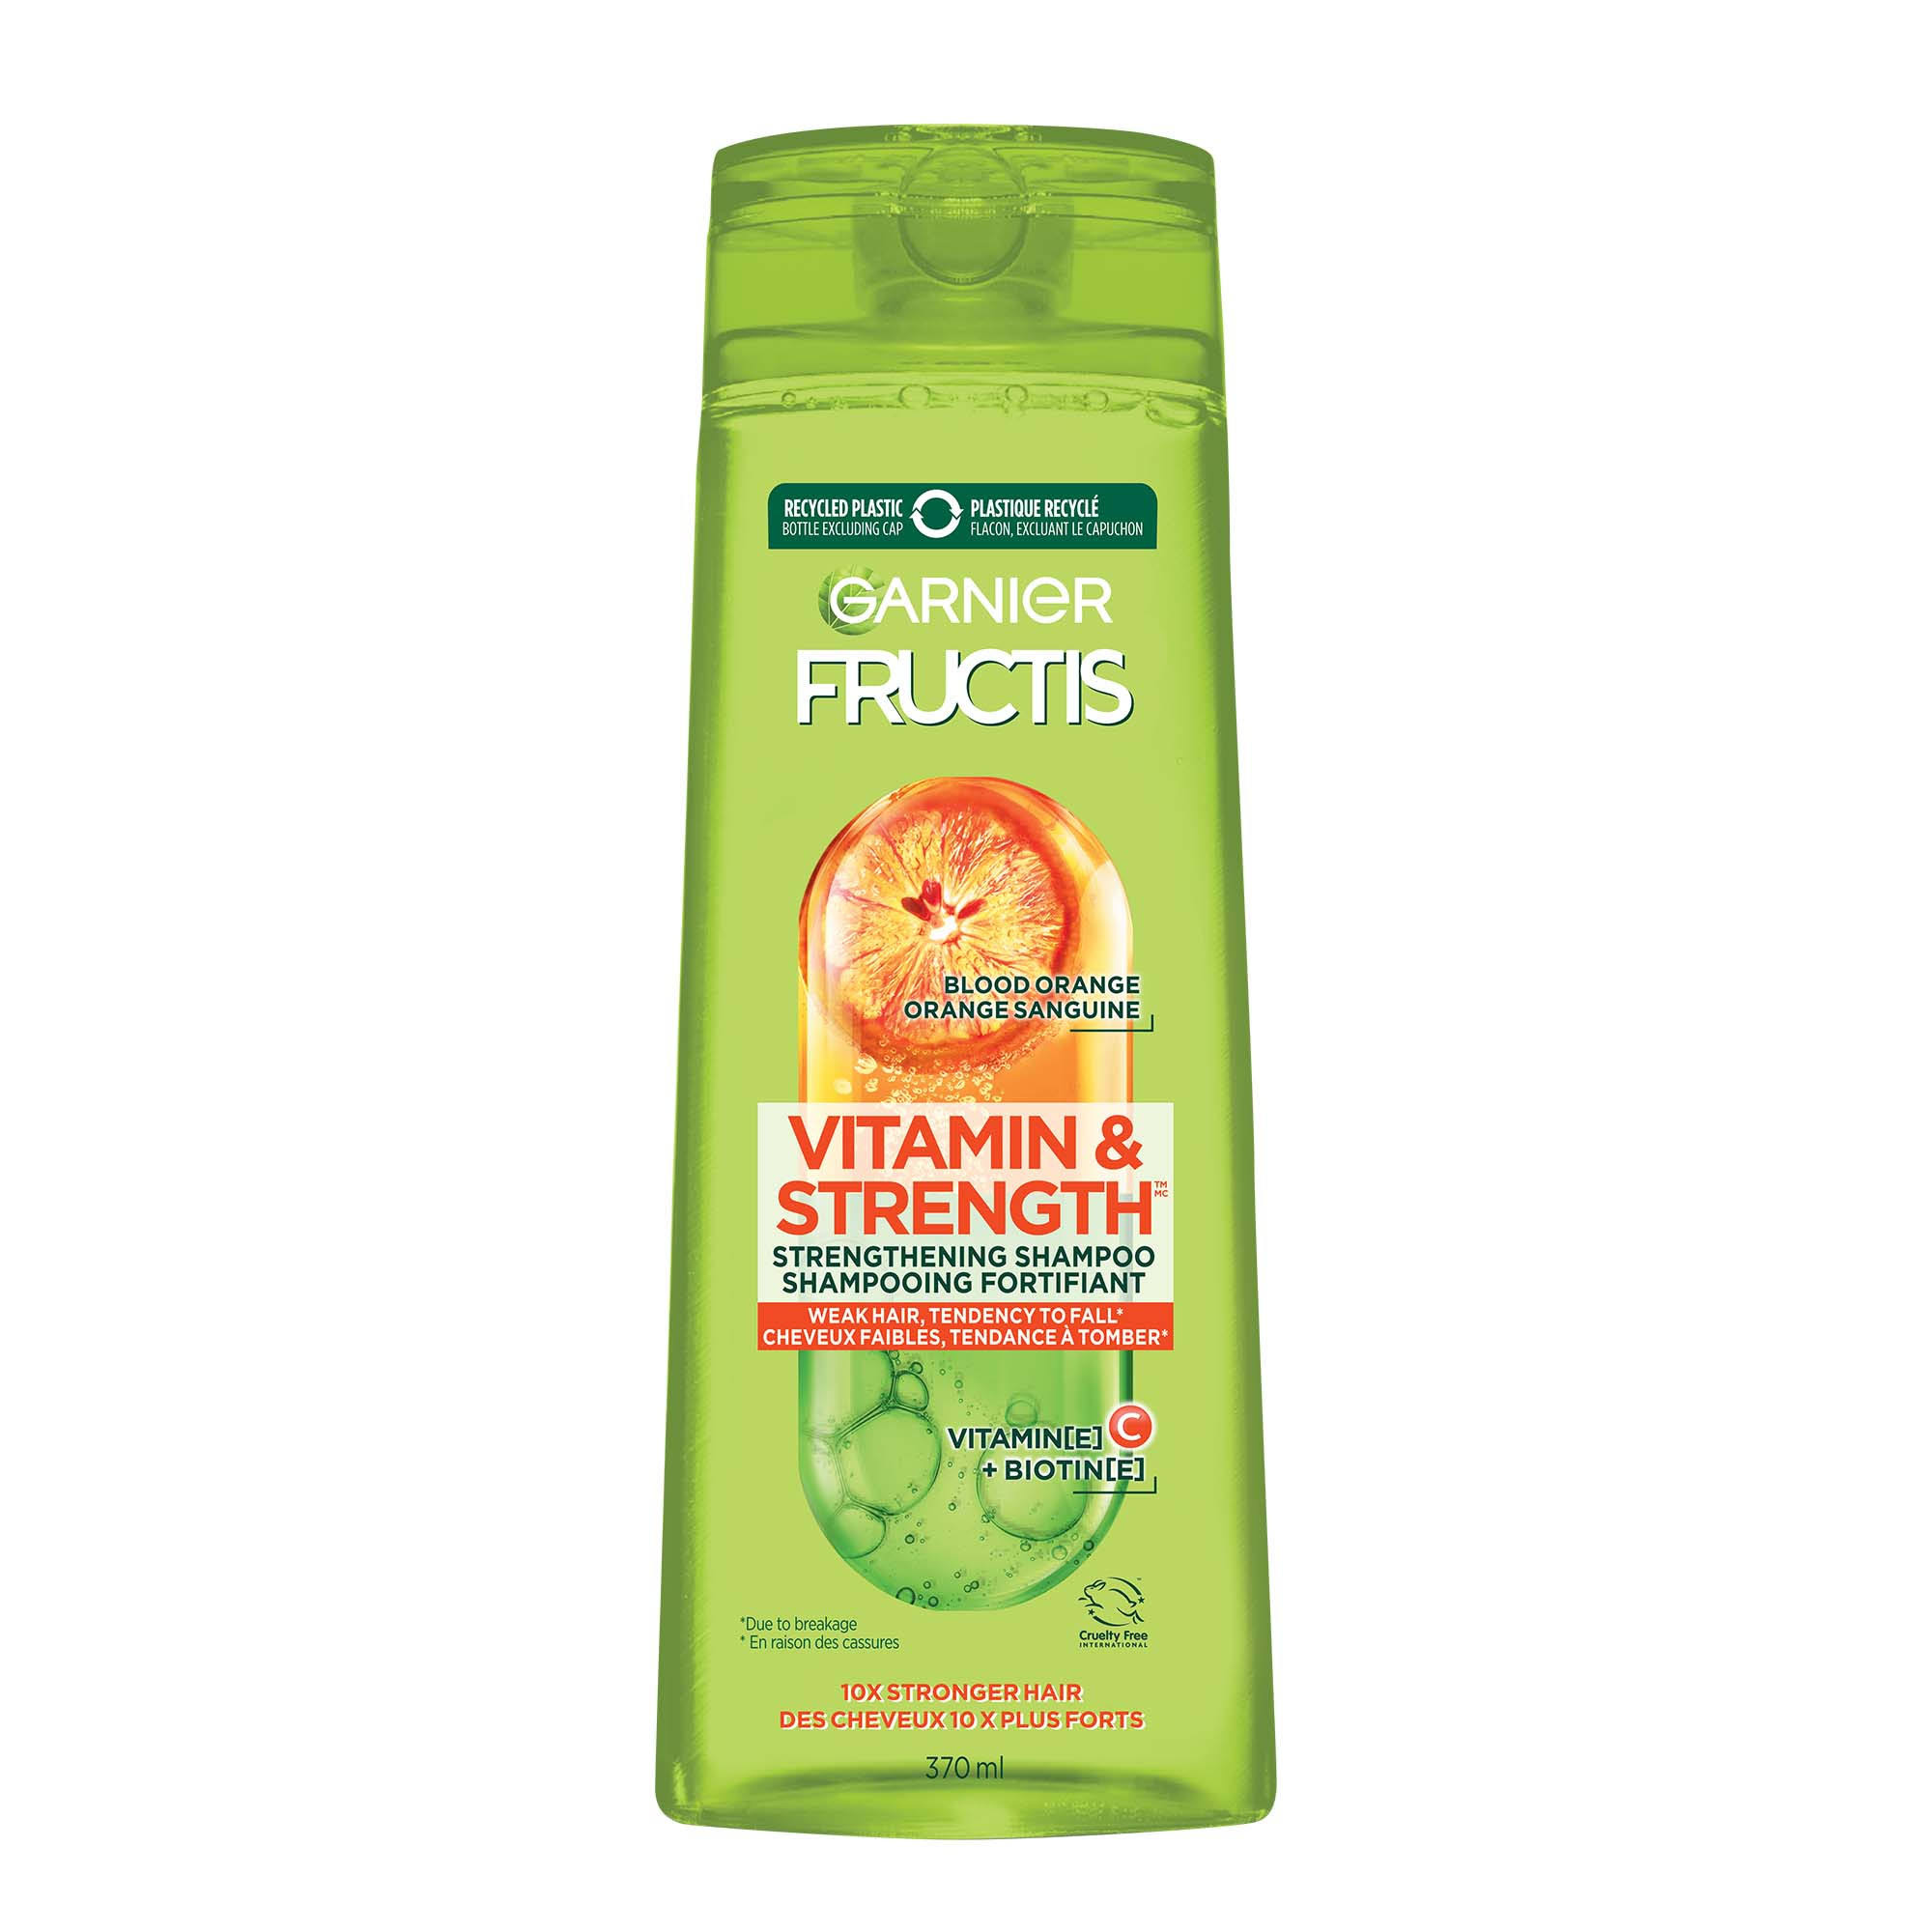 Fructis Vitamin & Strength Strengthening Shampoo for Weak Hair, 370 ml